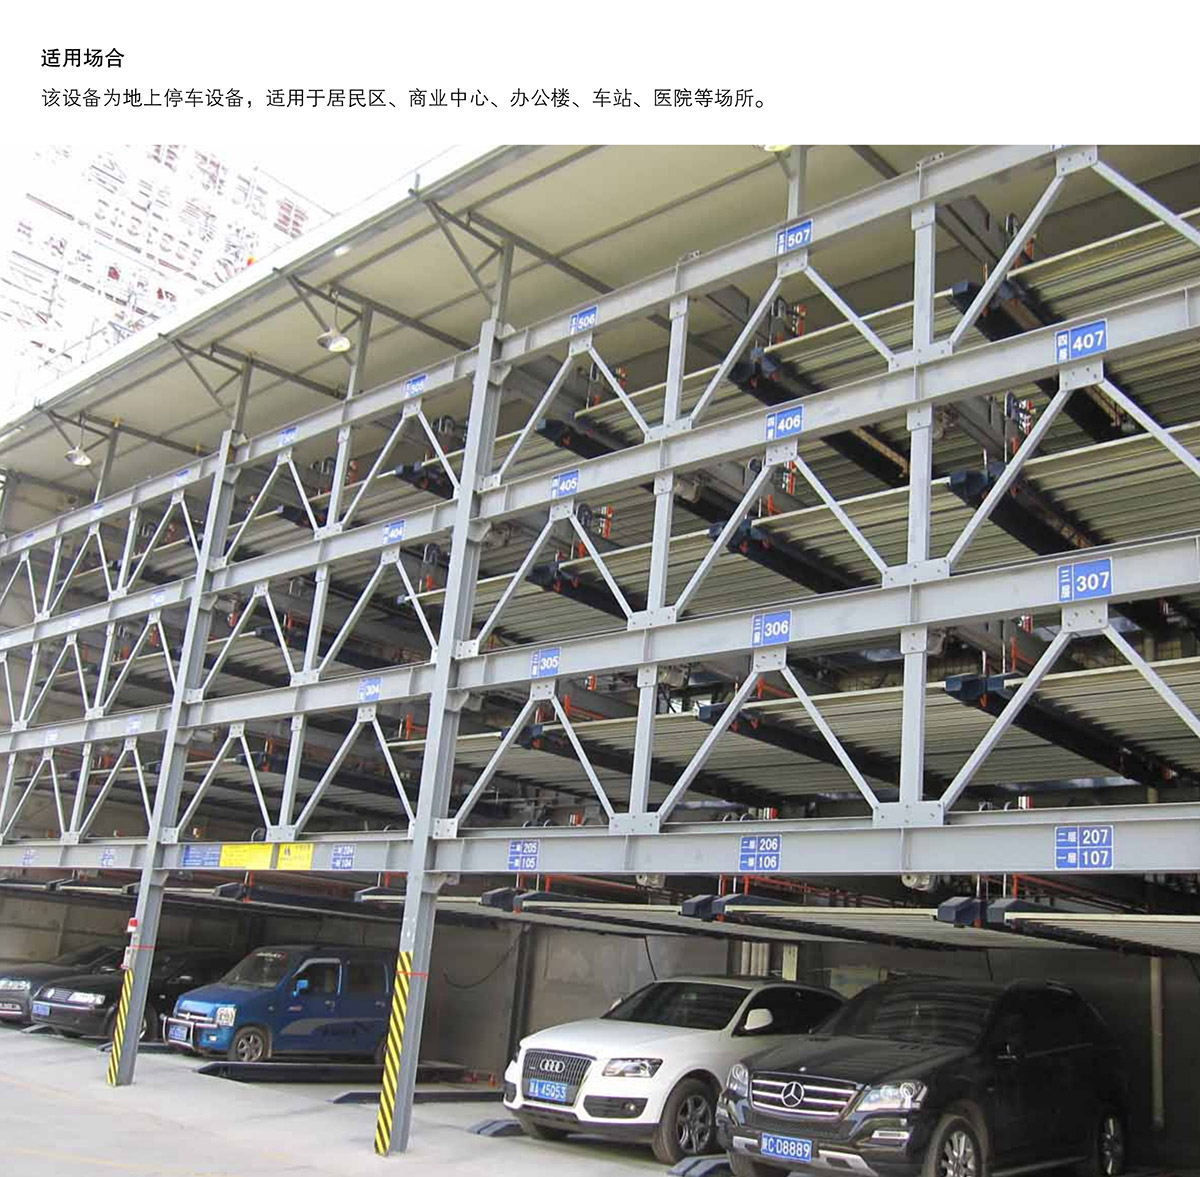 09四至六层PSH4-6升降横移立体停车设备适用场合.jpg